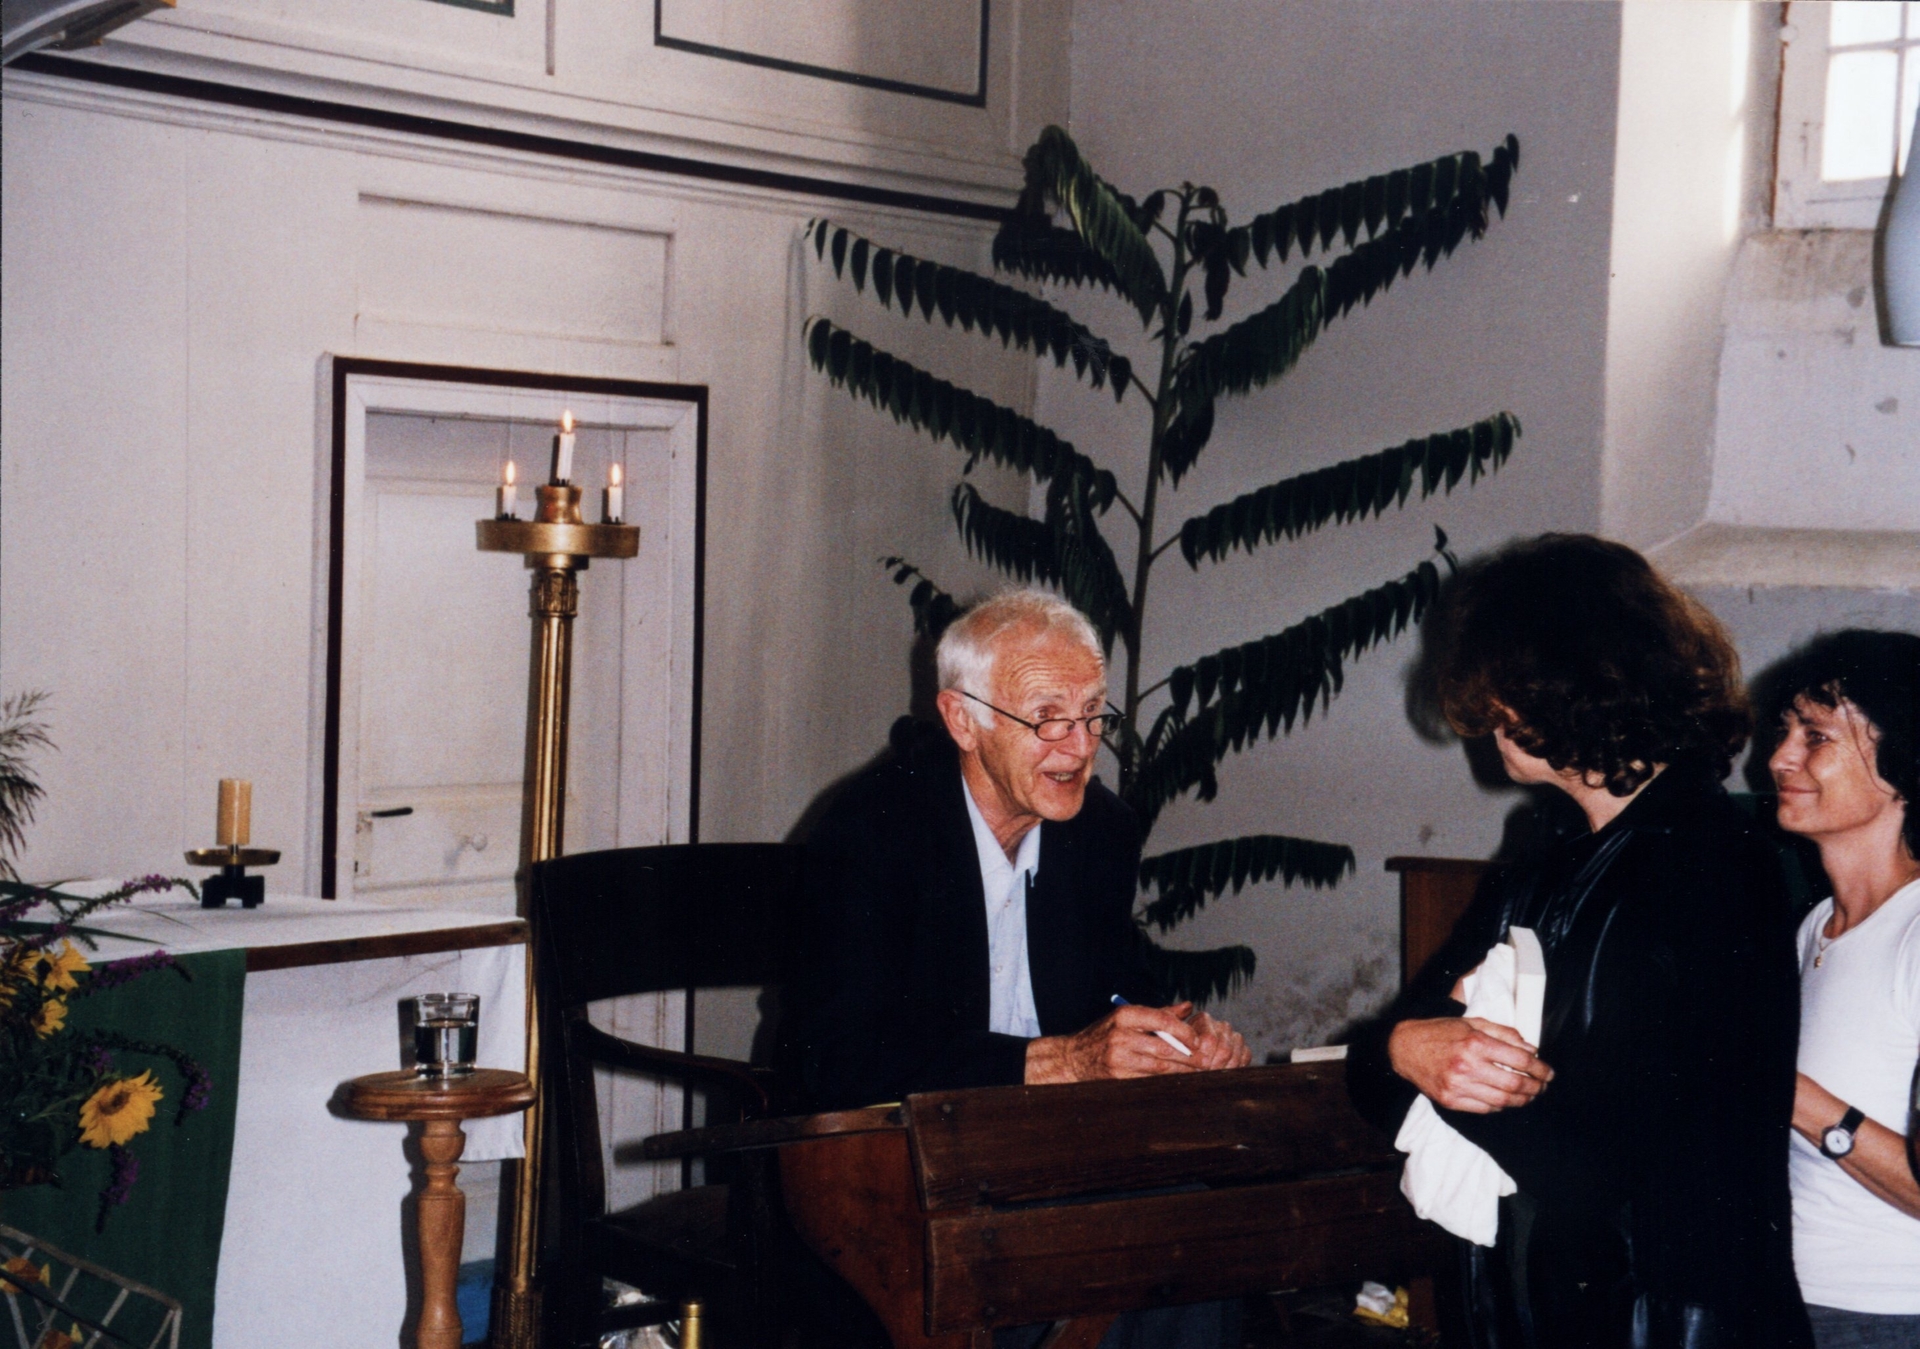 Bild : immer noch ein Gespräch während der Signierung seiner Bücher